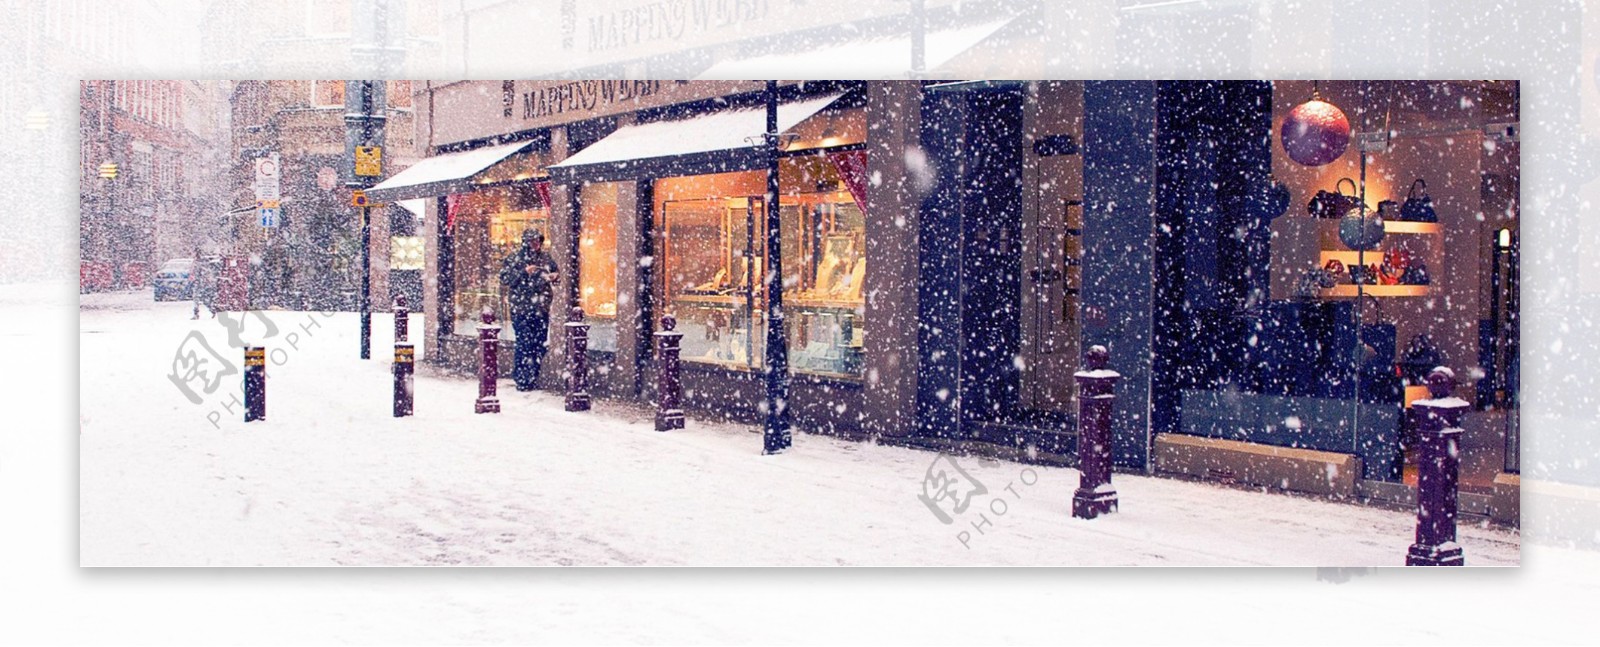 冬季街道雪景背景banner素材